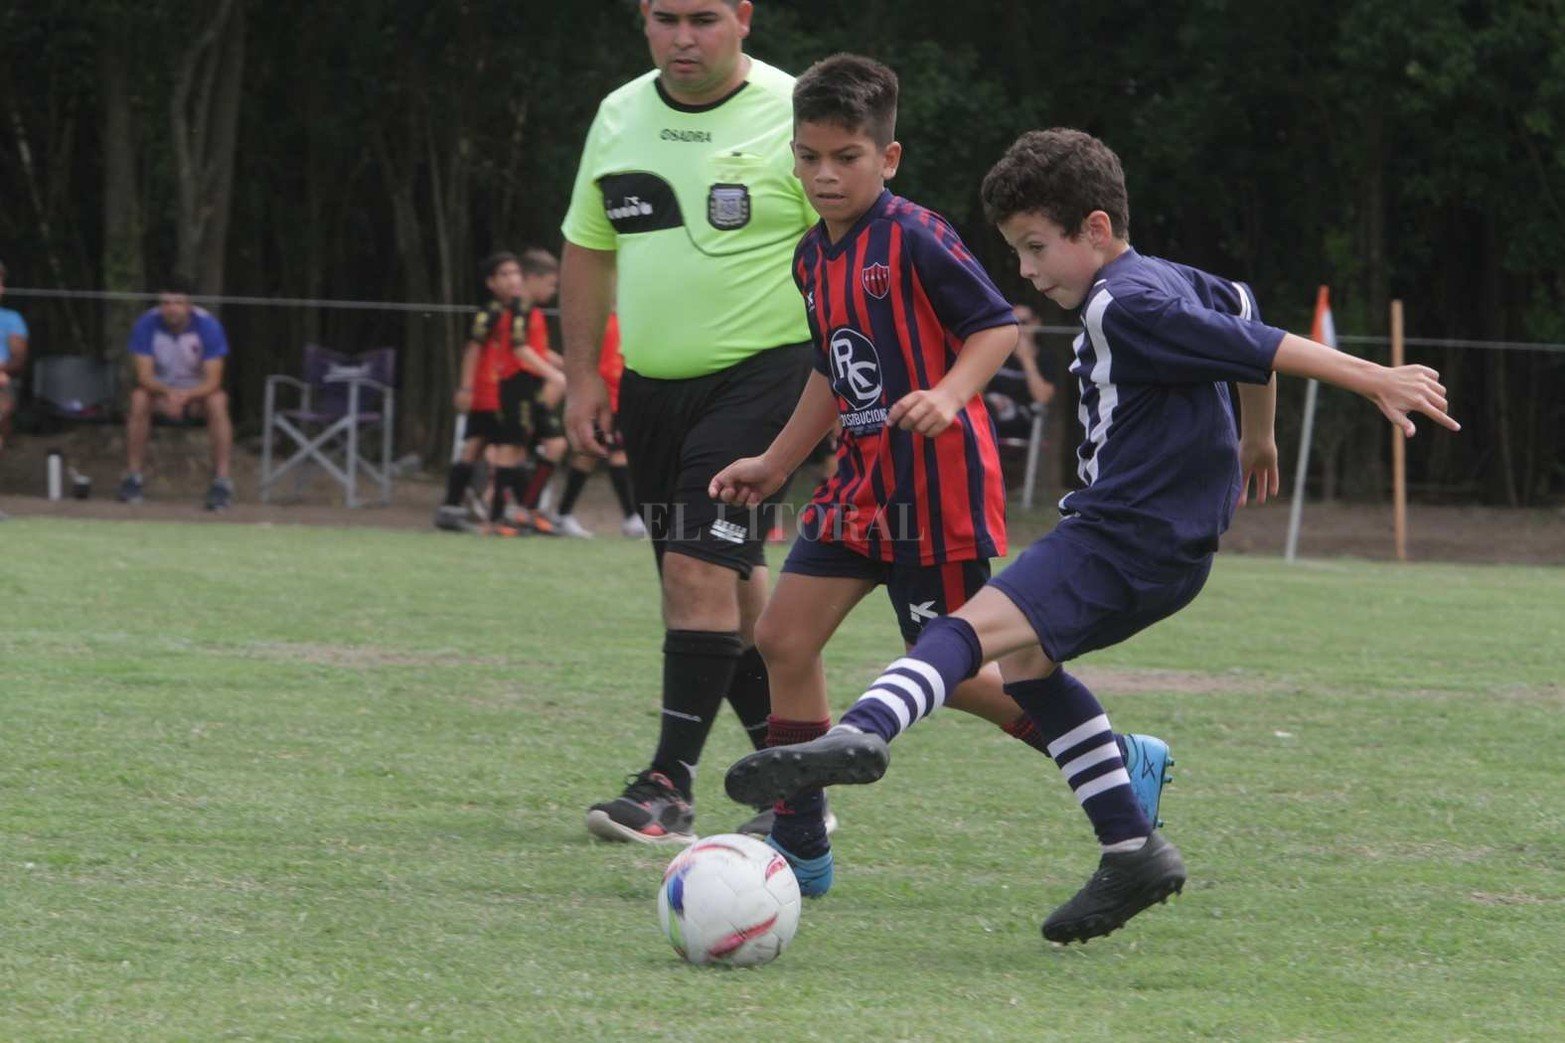 Organizado por el club Cosmos, se desarrolla la edición 11° edición del Torneo Talentos de fútbol infanto juvenil.